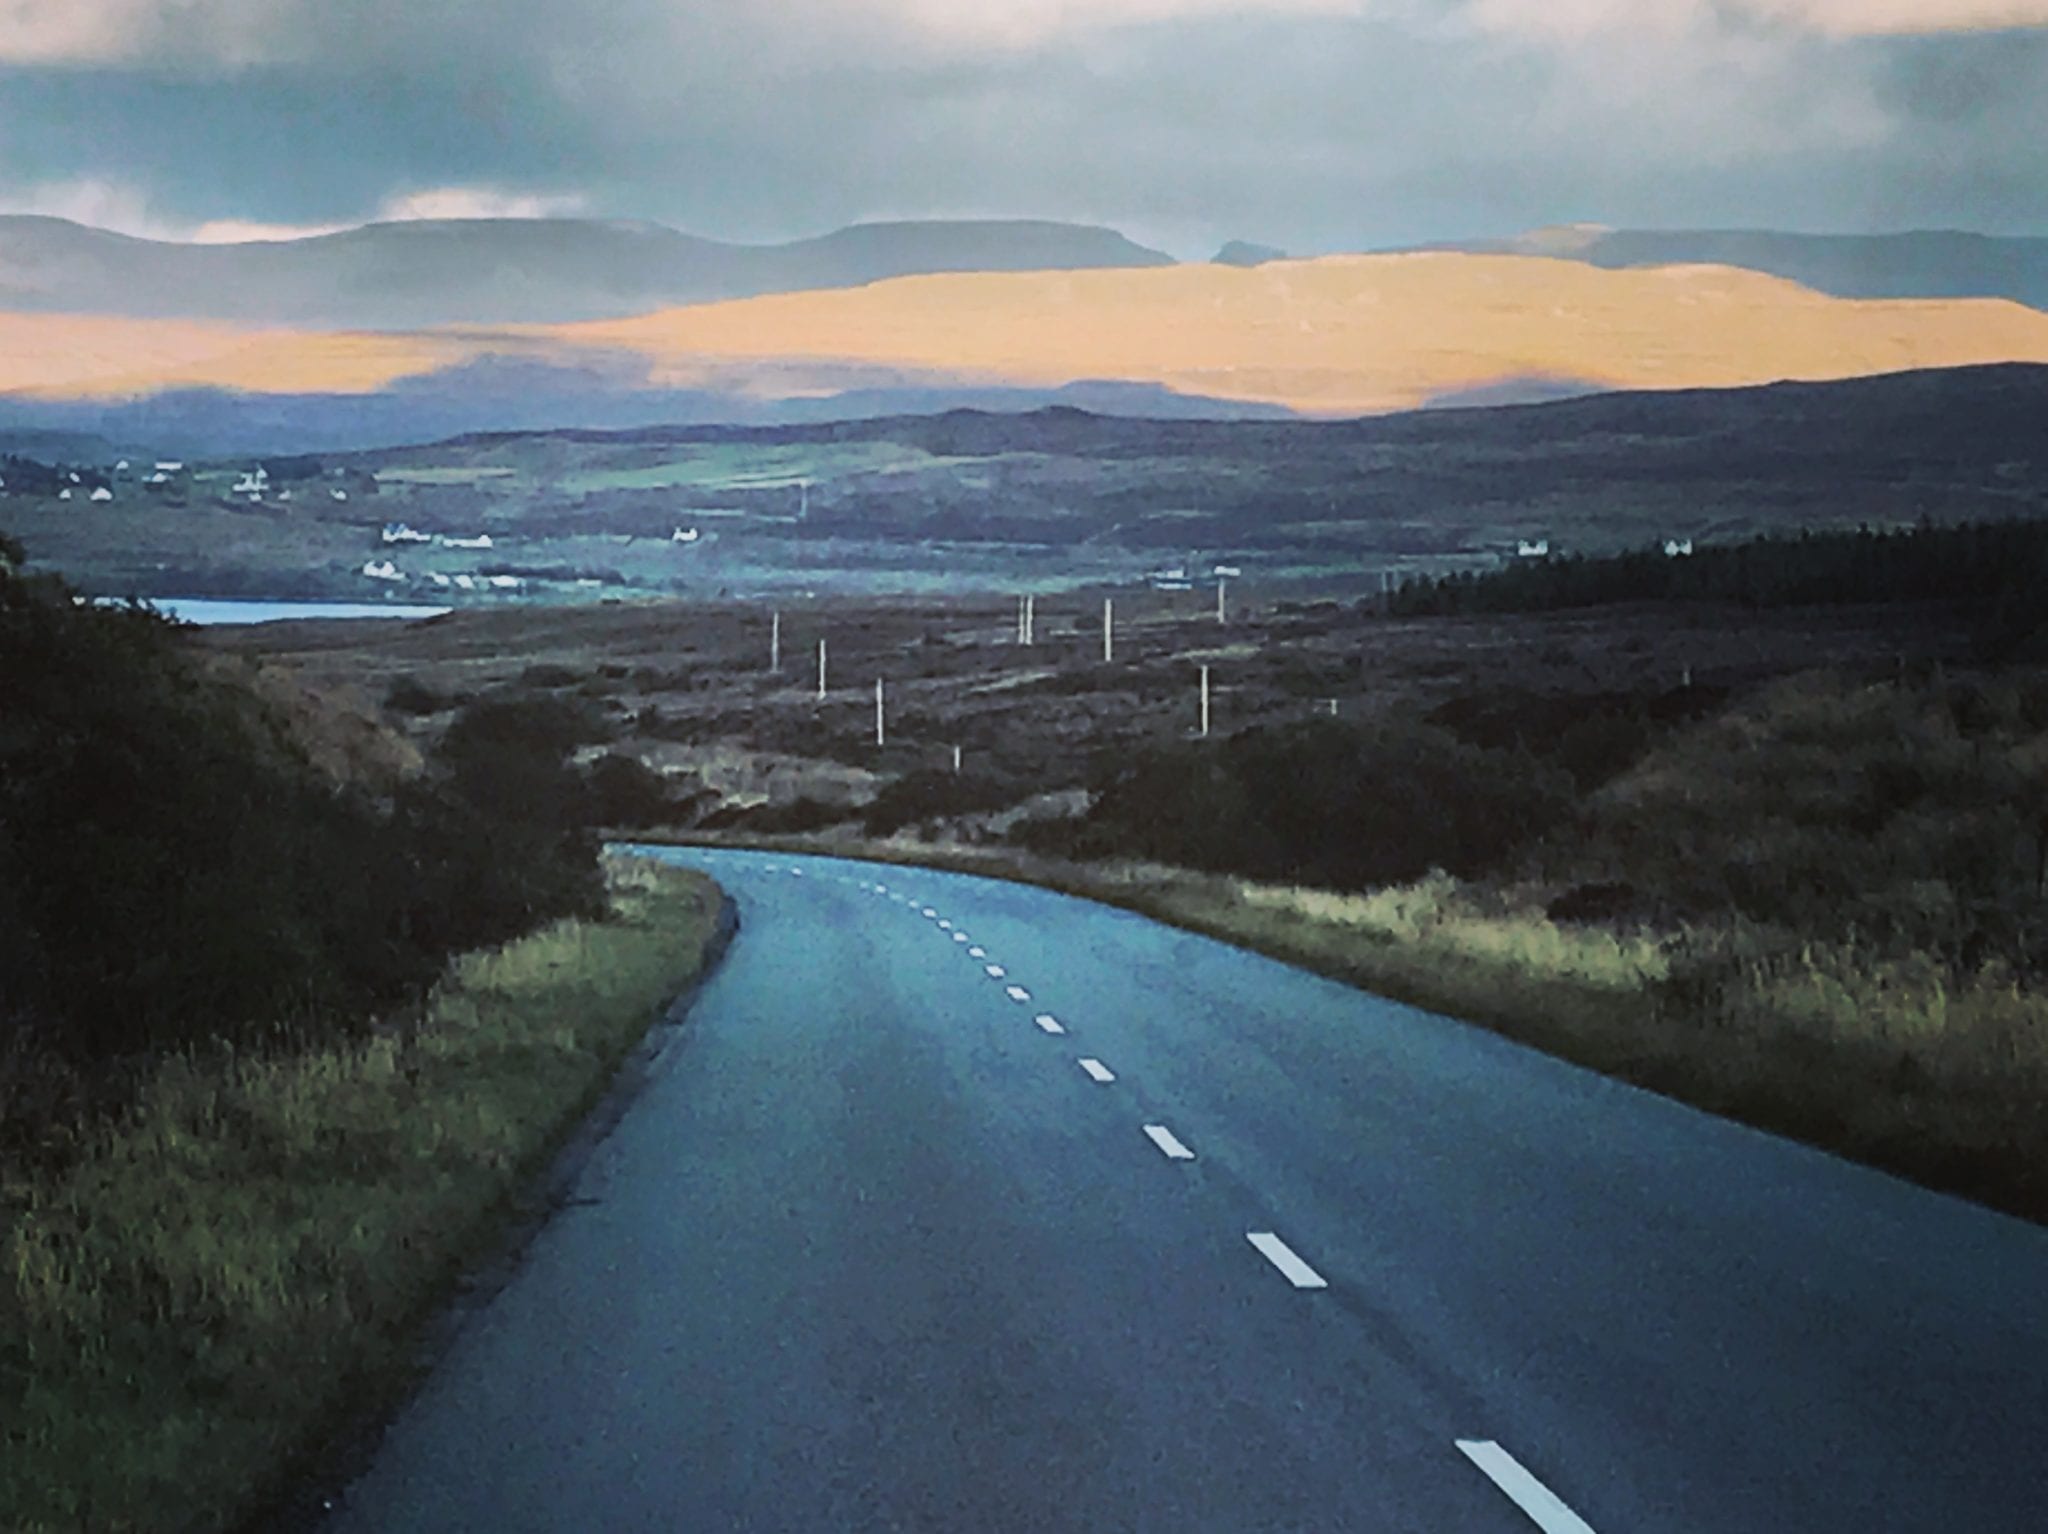 Moody sky on an empty windy road in Scotland